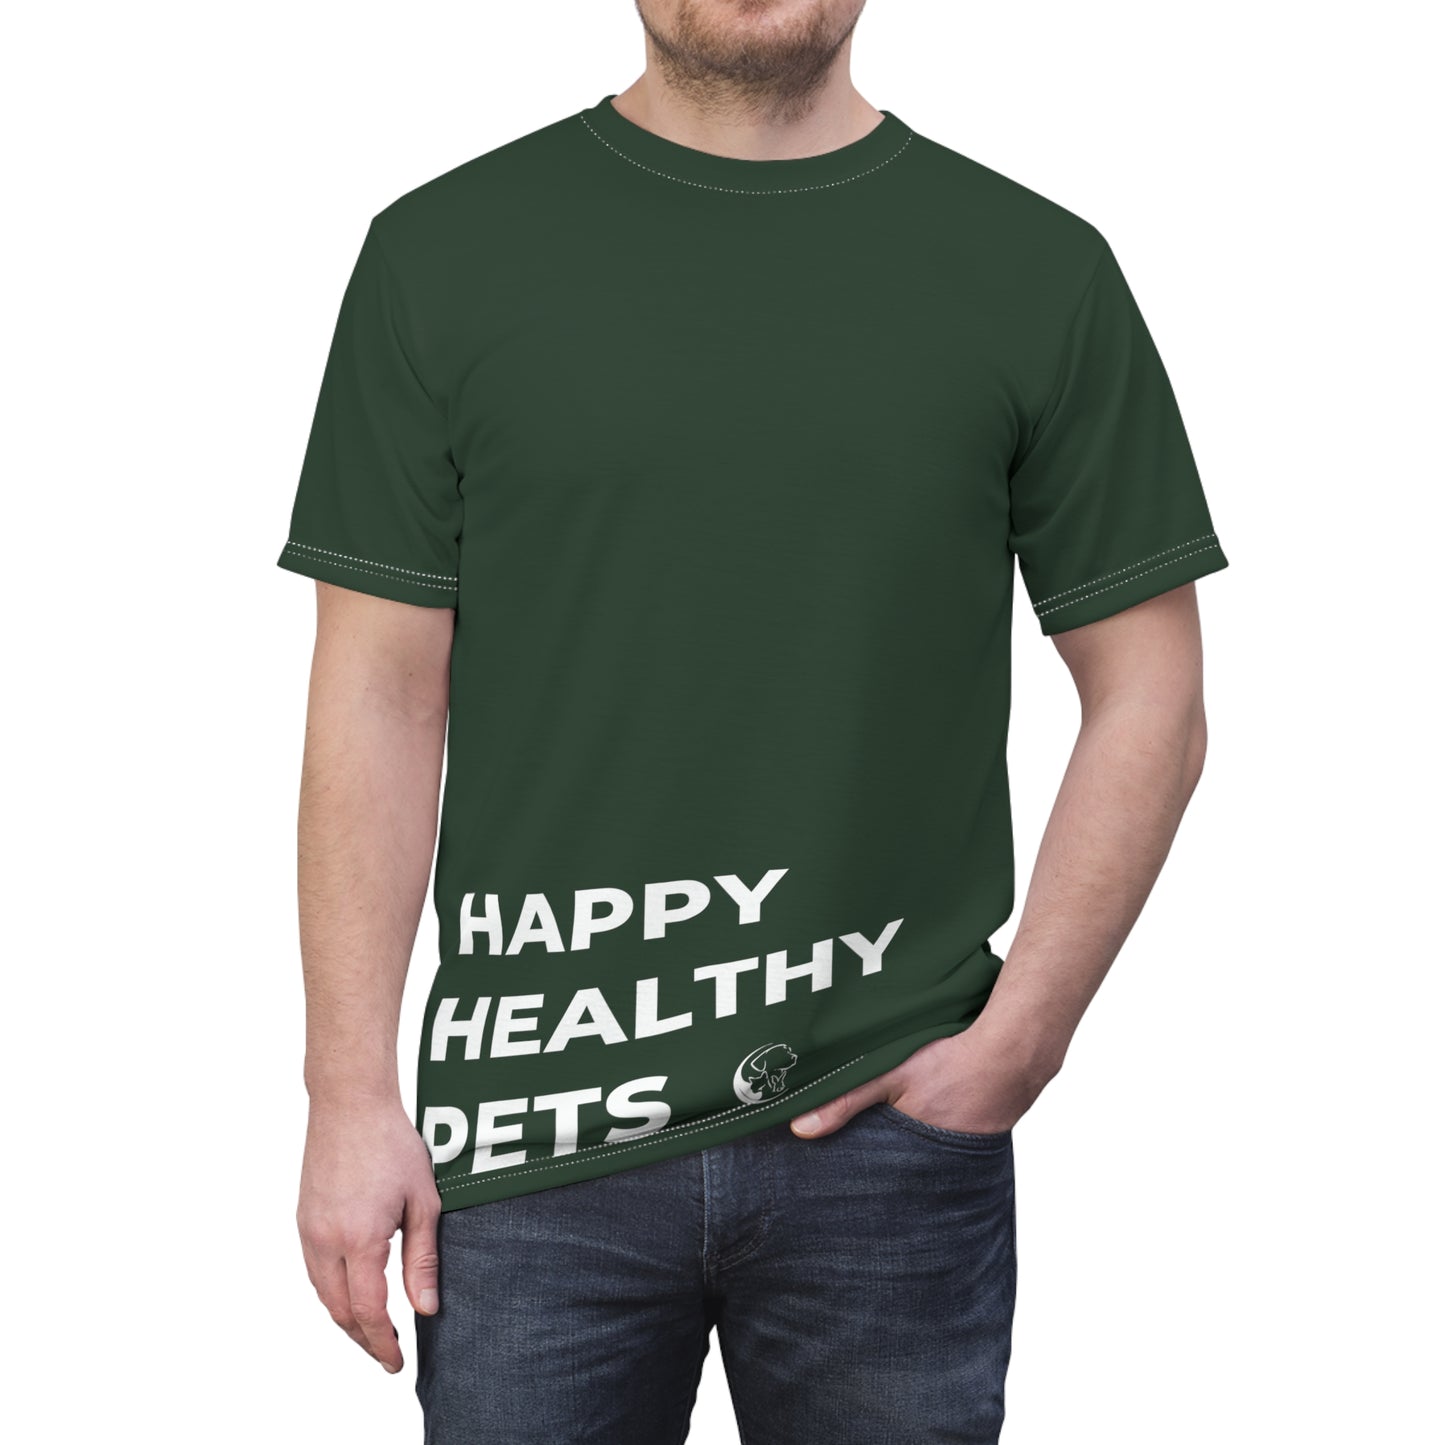 Paleo Pet Goods- Happy Healthy Pets (Green)